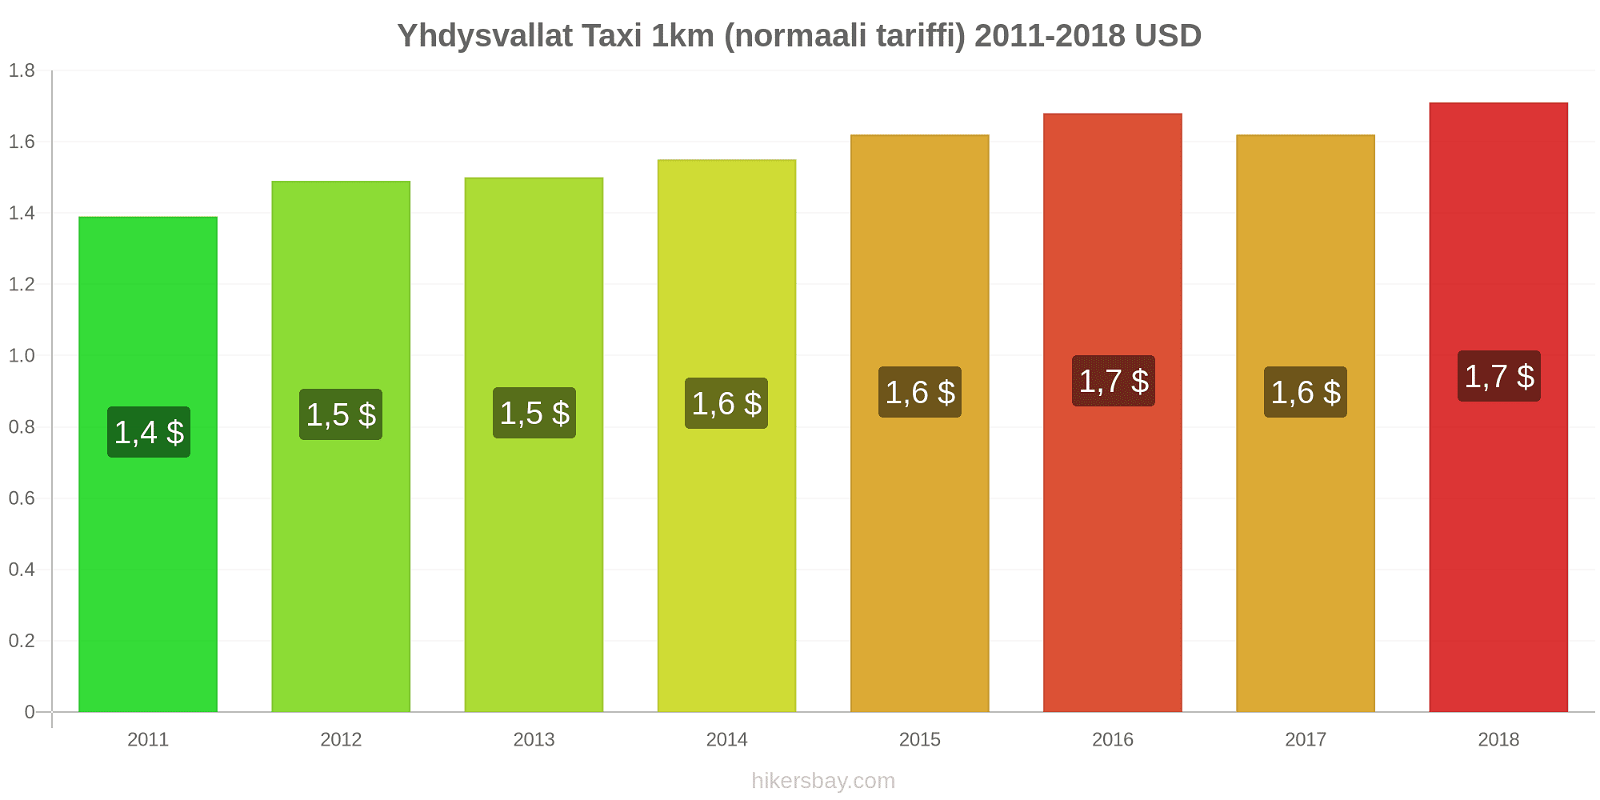 Yhdysvallat hintojen muutokset Taxi 1km (normaali tariffi) hikersbay.com